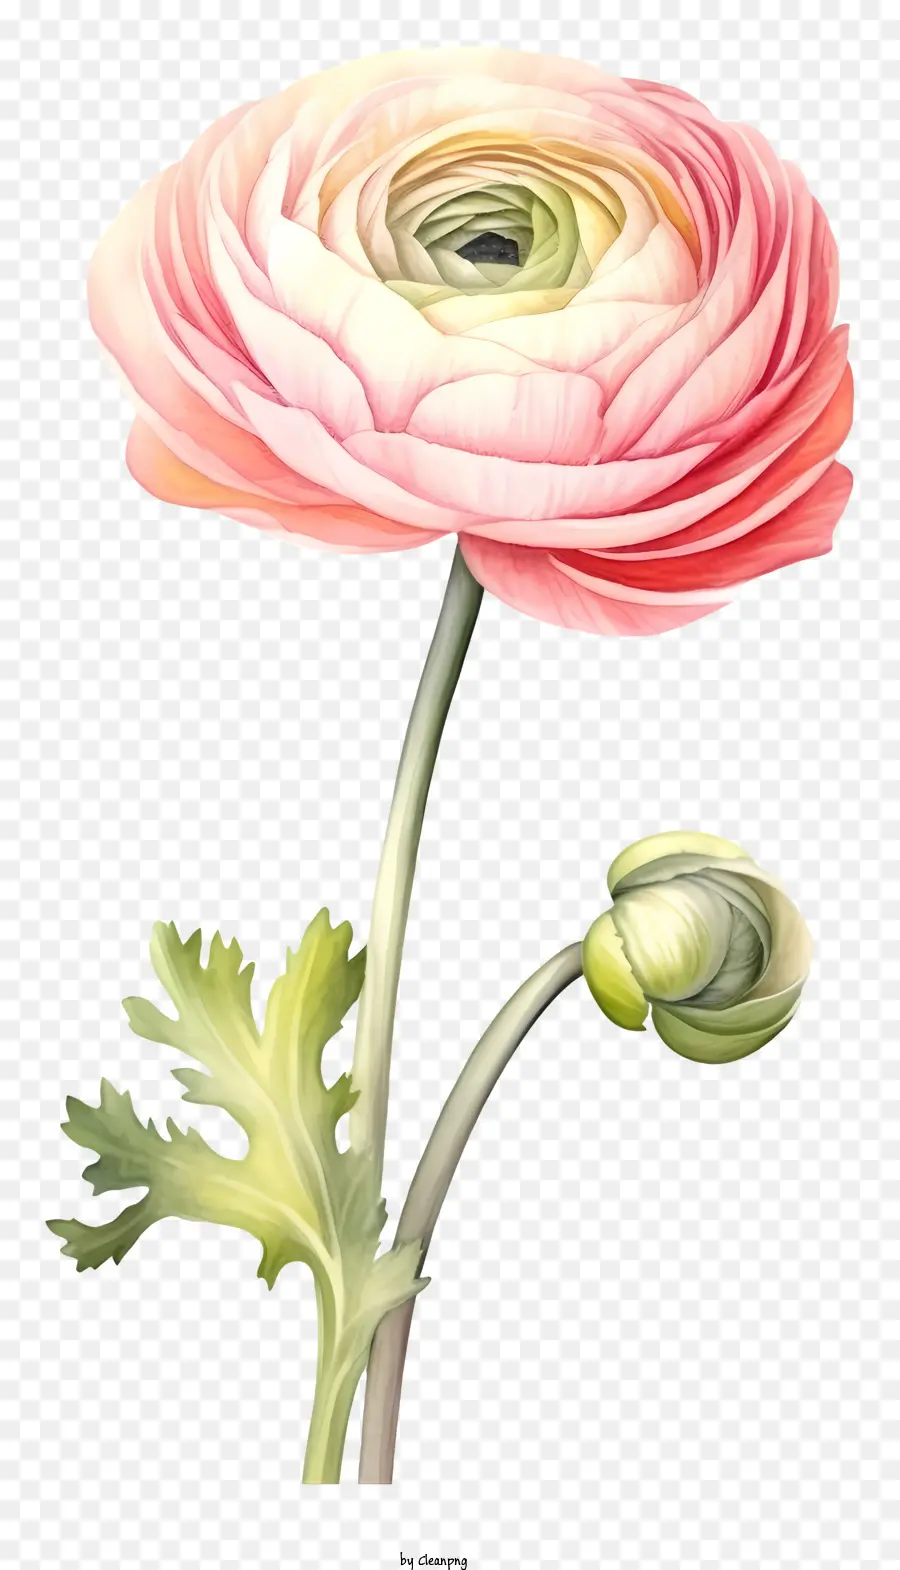 hoa hải quỳ màu hồng nhị hoa và nhụy hoa cuộn tròn cây xanh lá cây xanh lá cây - Hình ảnh hoa hải quỳ màu hồng; 
Thiếu chi tiết và nền tảng